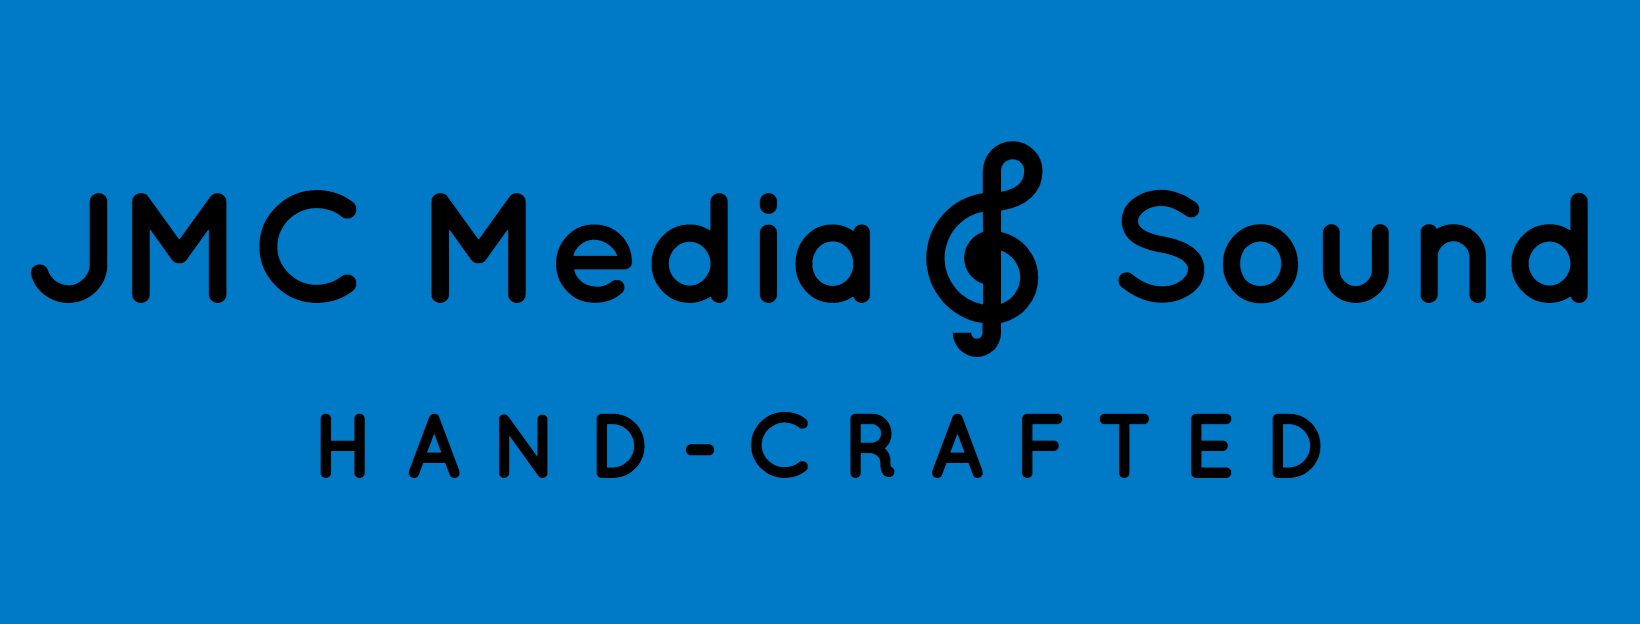 JMC Media and Sound company logo